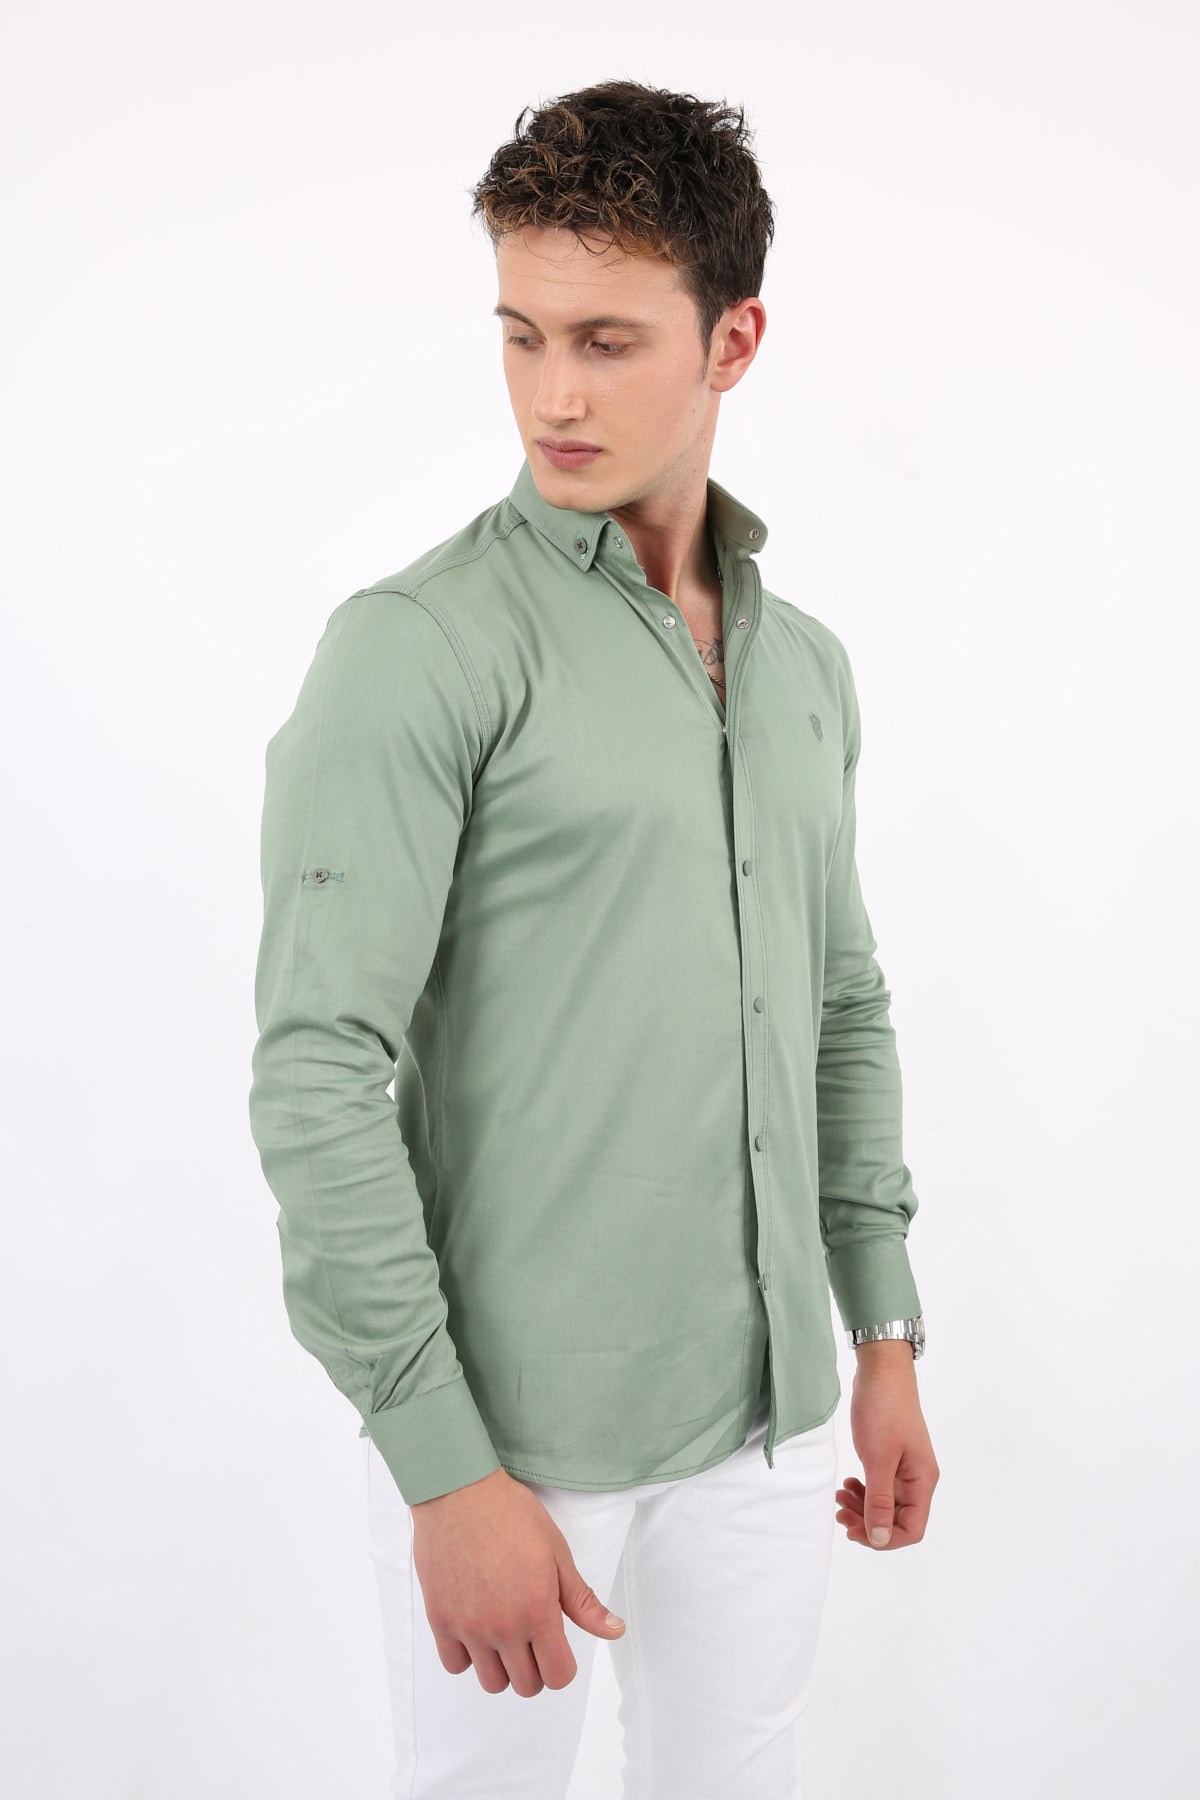 Erkek Su Yeşili Slimfit Gömlek 1701 ette.com.tr | Bay Ve Çocuk Giyim  Modelleri